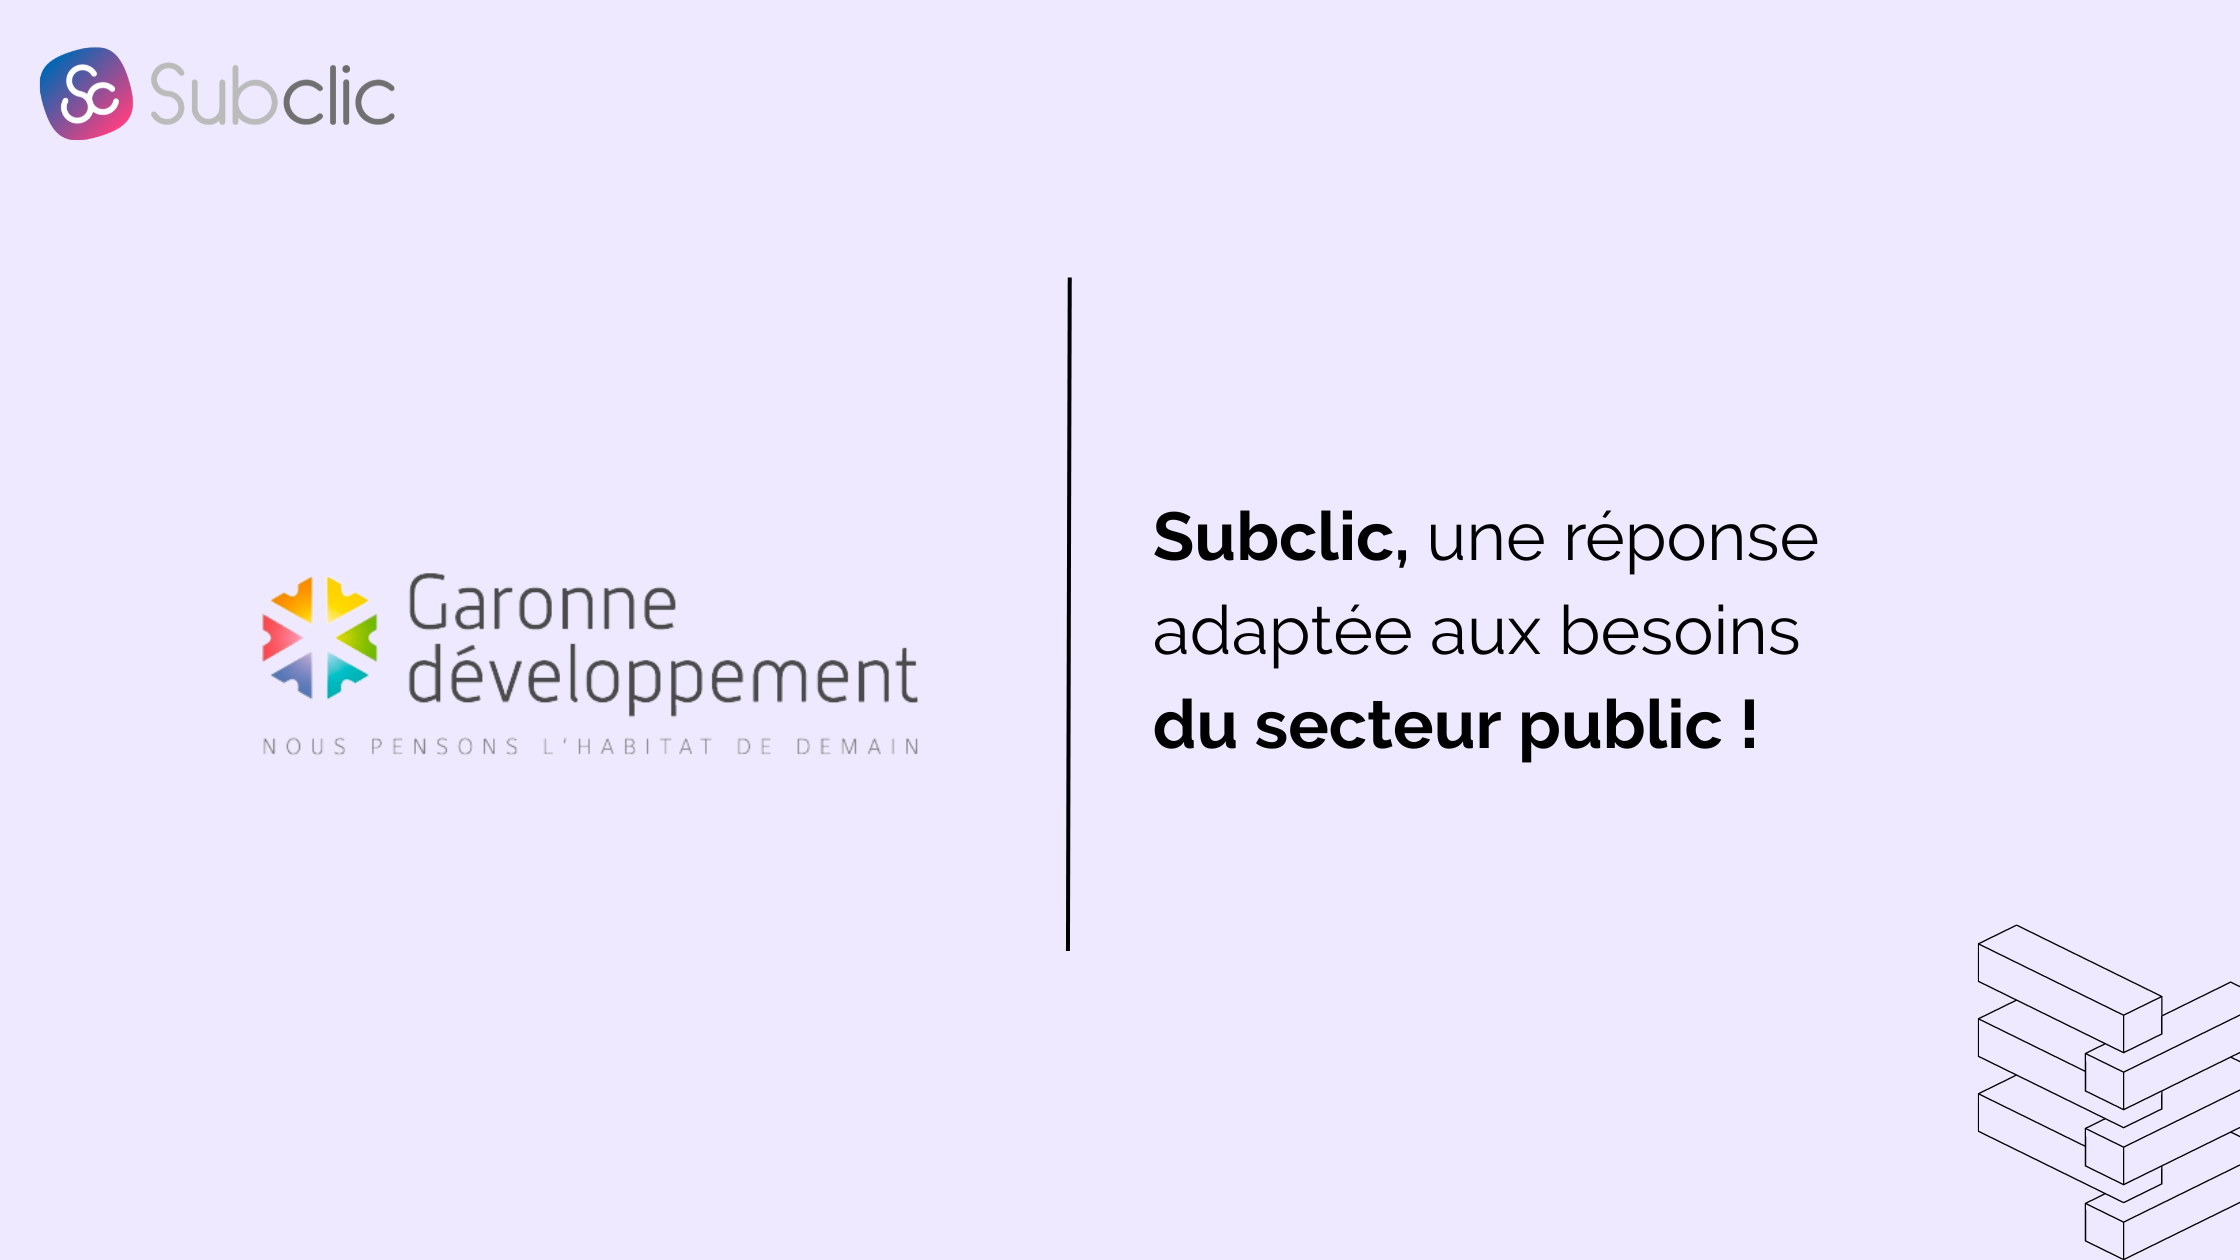 You are currently viewing Gie Garonne : Subclic, une réponse adaptée aux besoins du secteur public !